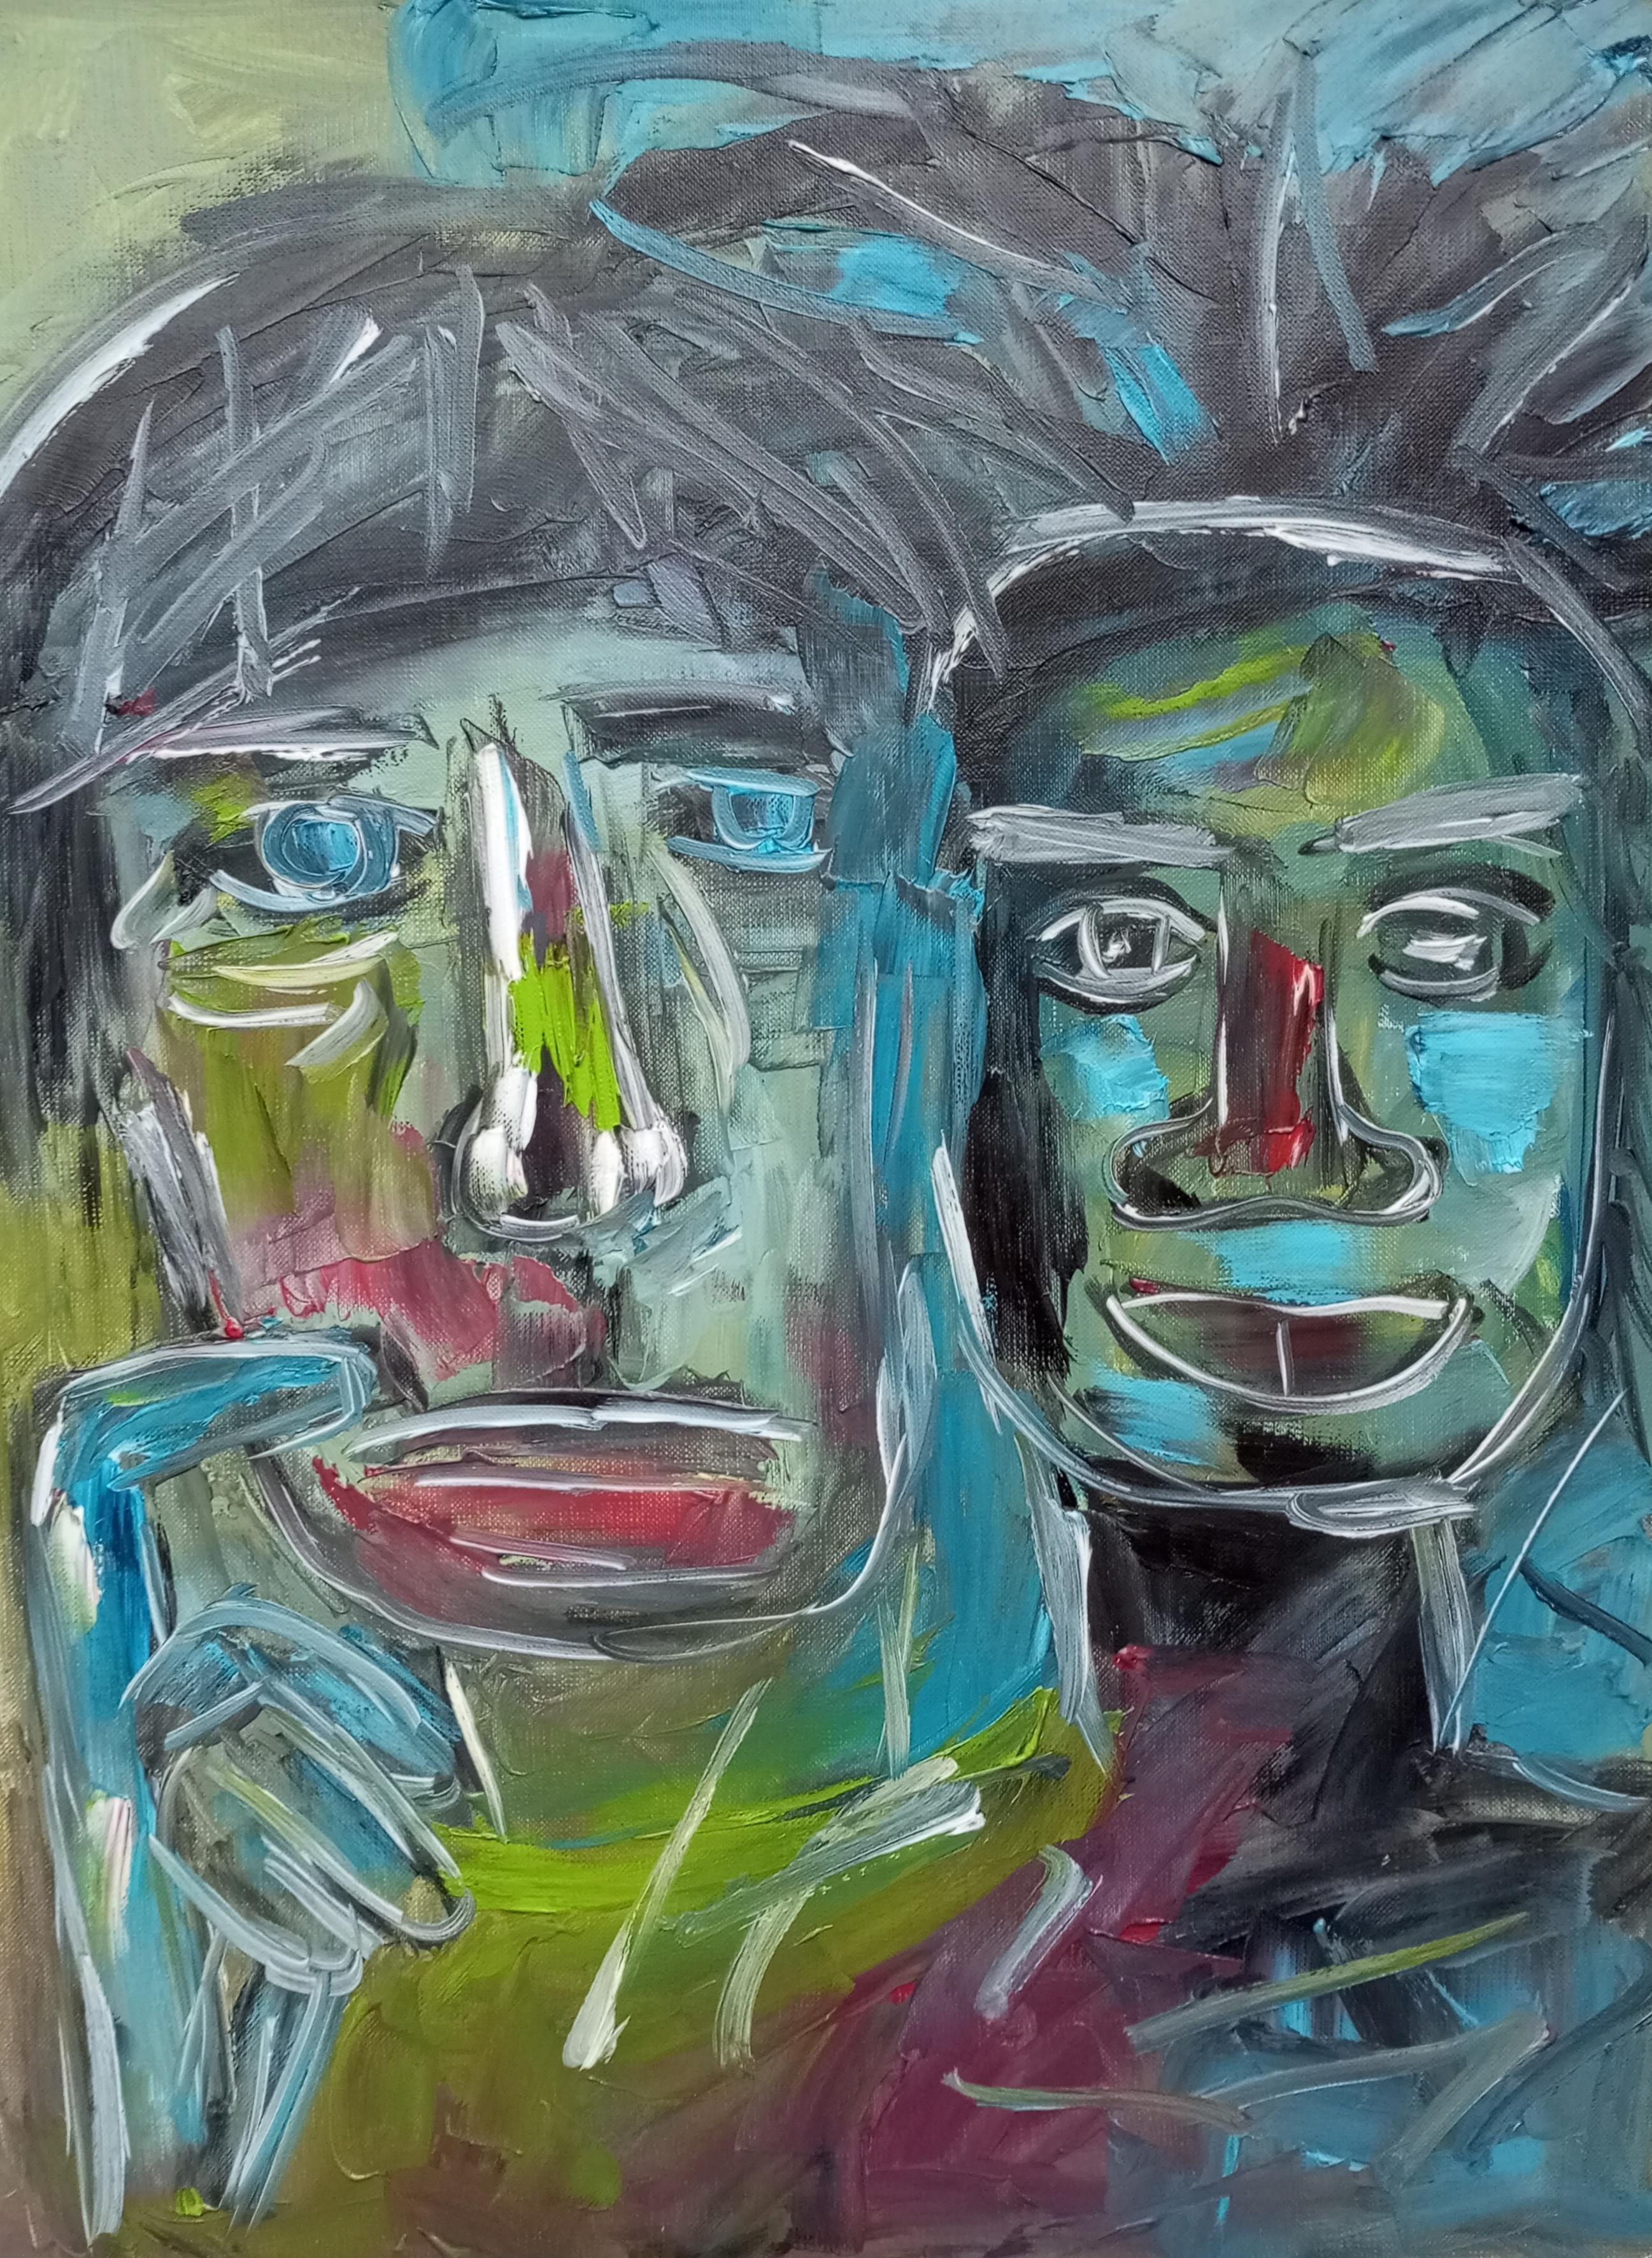  "Freundschaft Wharol/Basquiat"